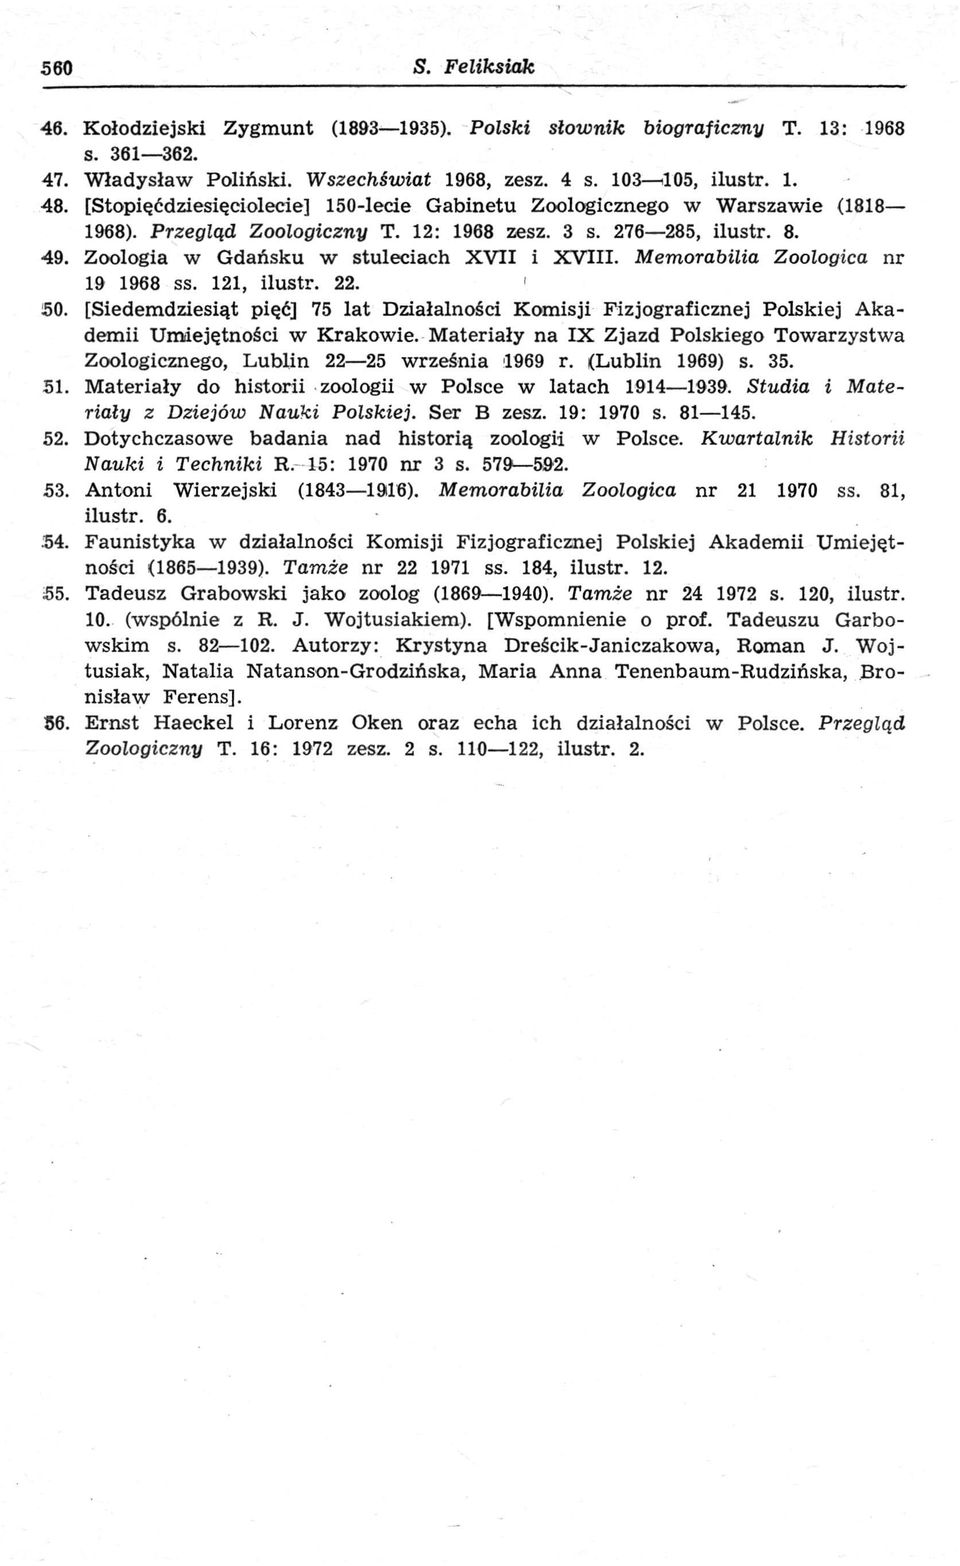 Memorabilia Zoologica nr 19 1968 ss. 121, ilustr. 22. 50. [Siedemdziesiąt pięć] 75 lat Działalności Komisji Fizjograficznej Polskiej Akademii Umiejętności w Krakowie.